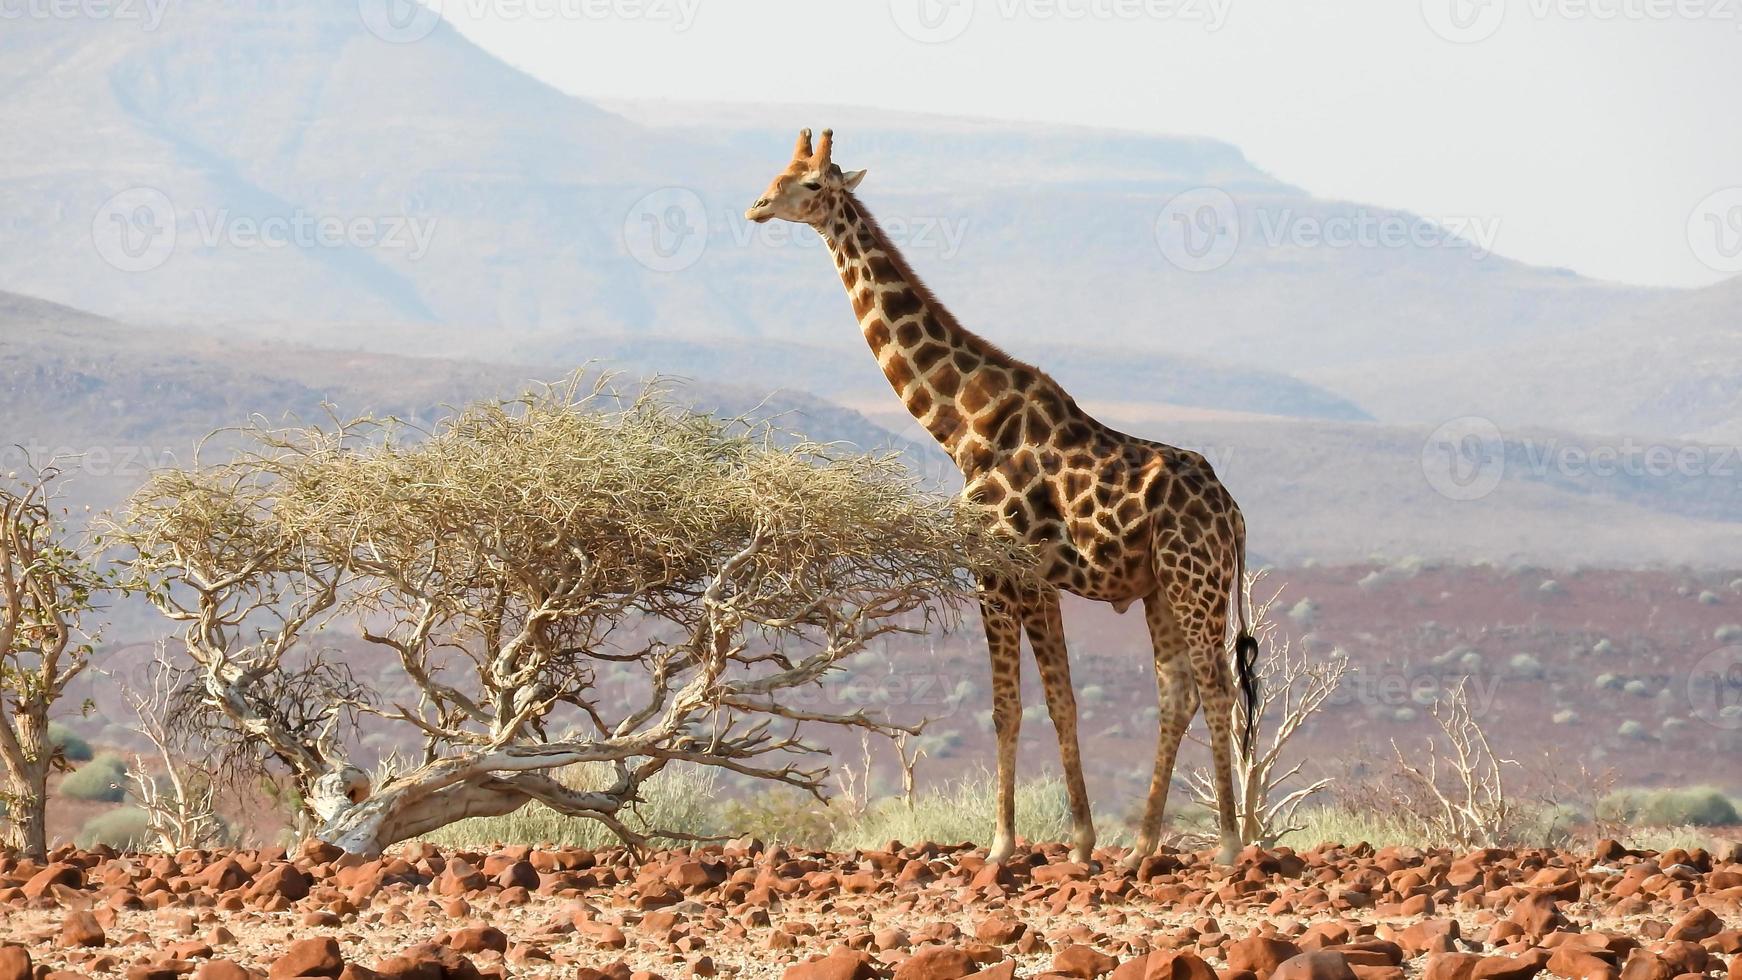 Giraffe im das riesig Wüste von Namibia Damaraland foto